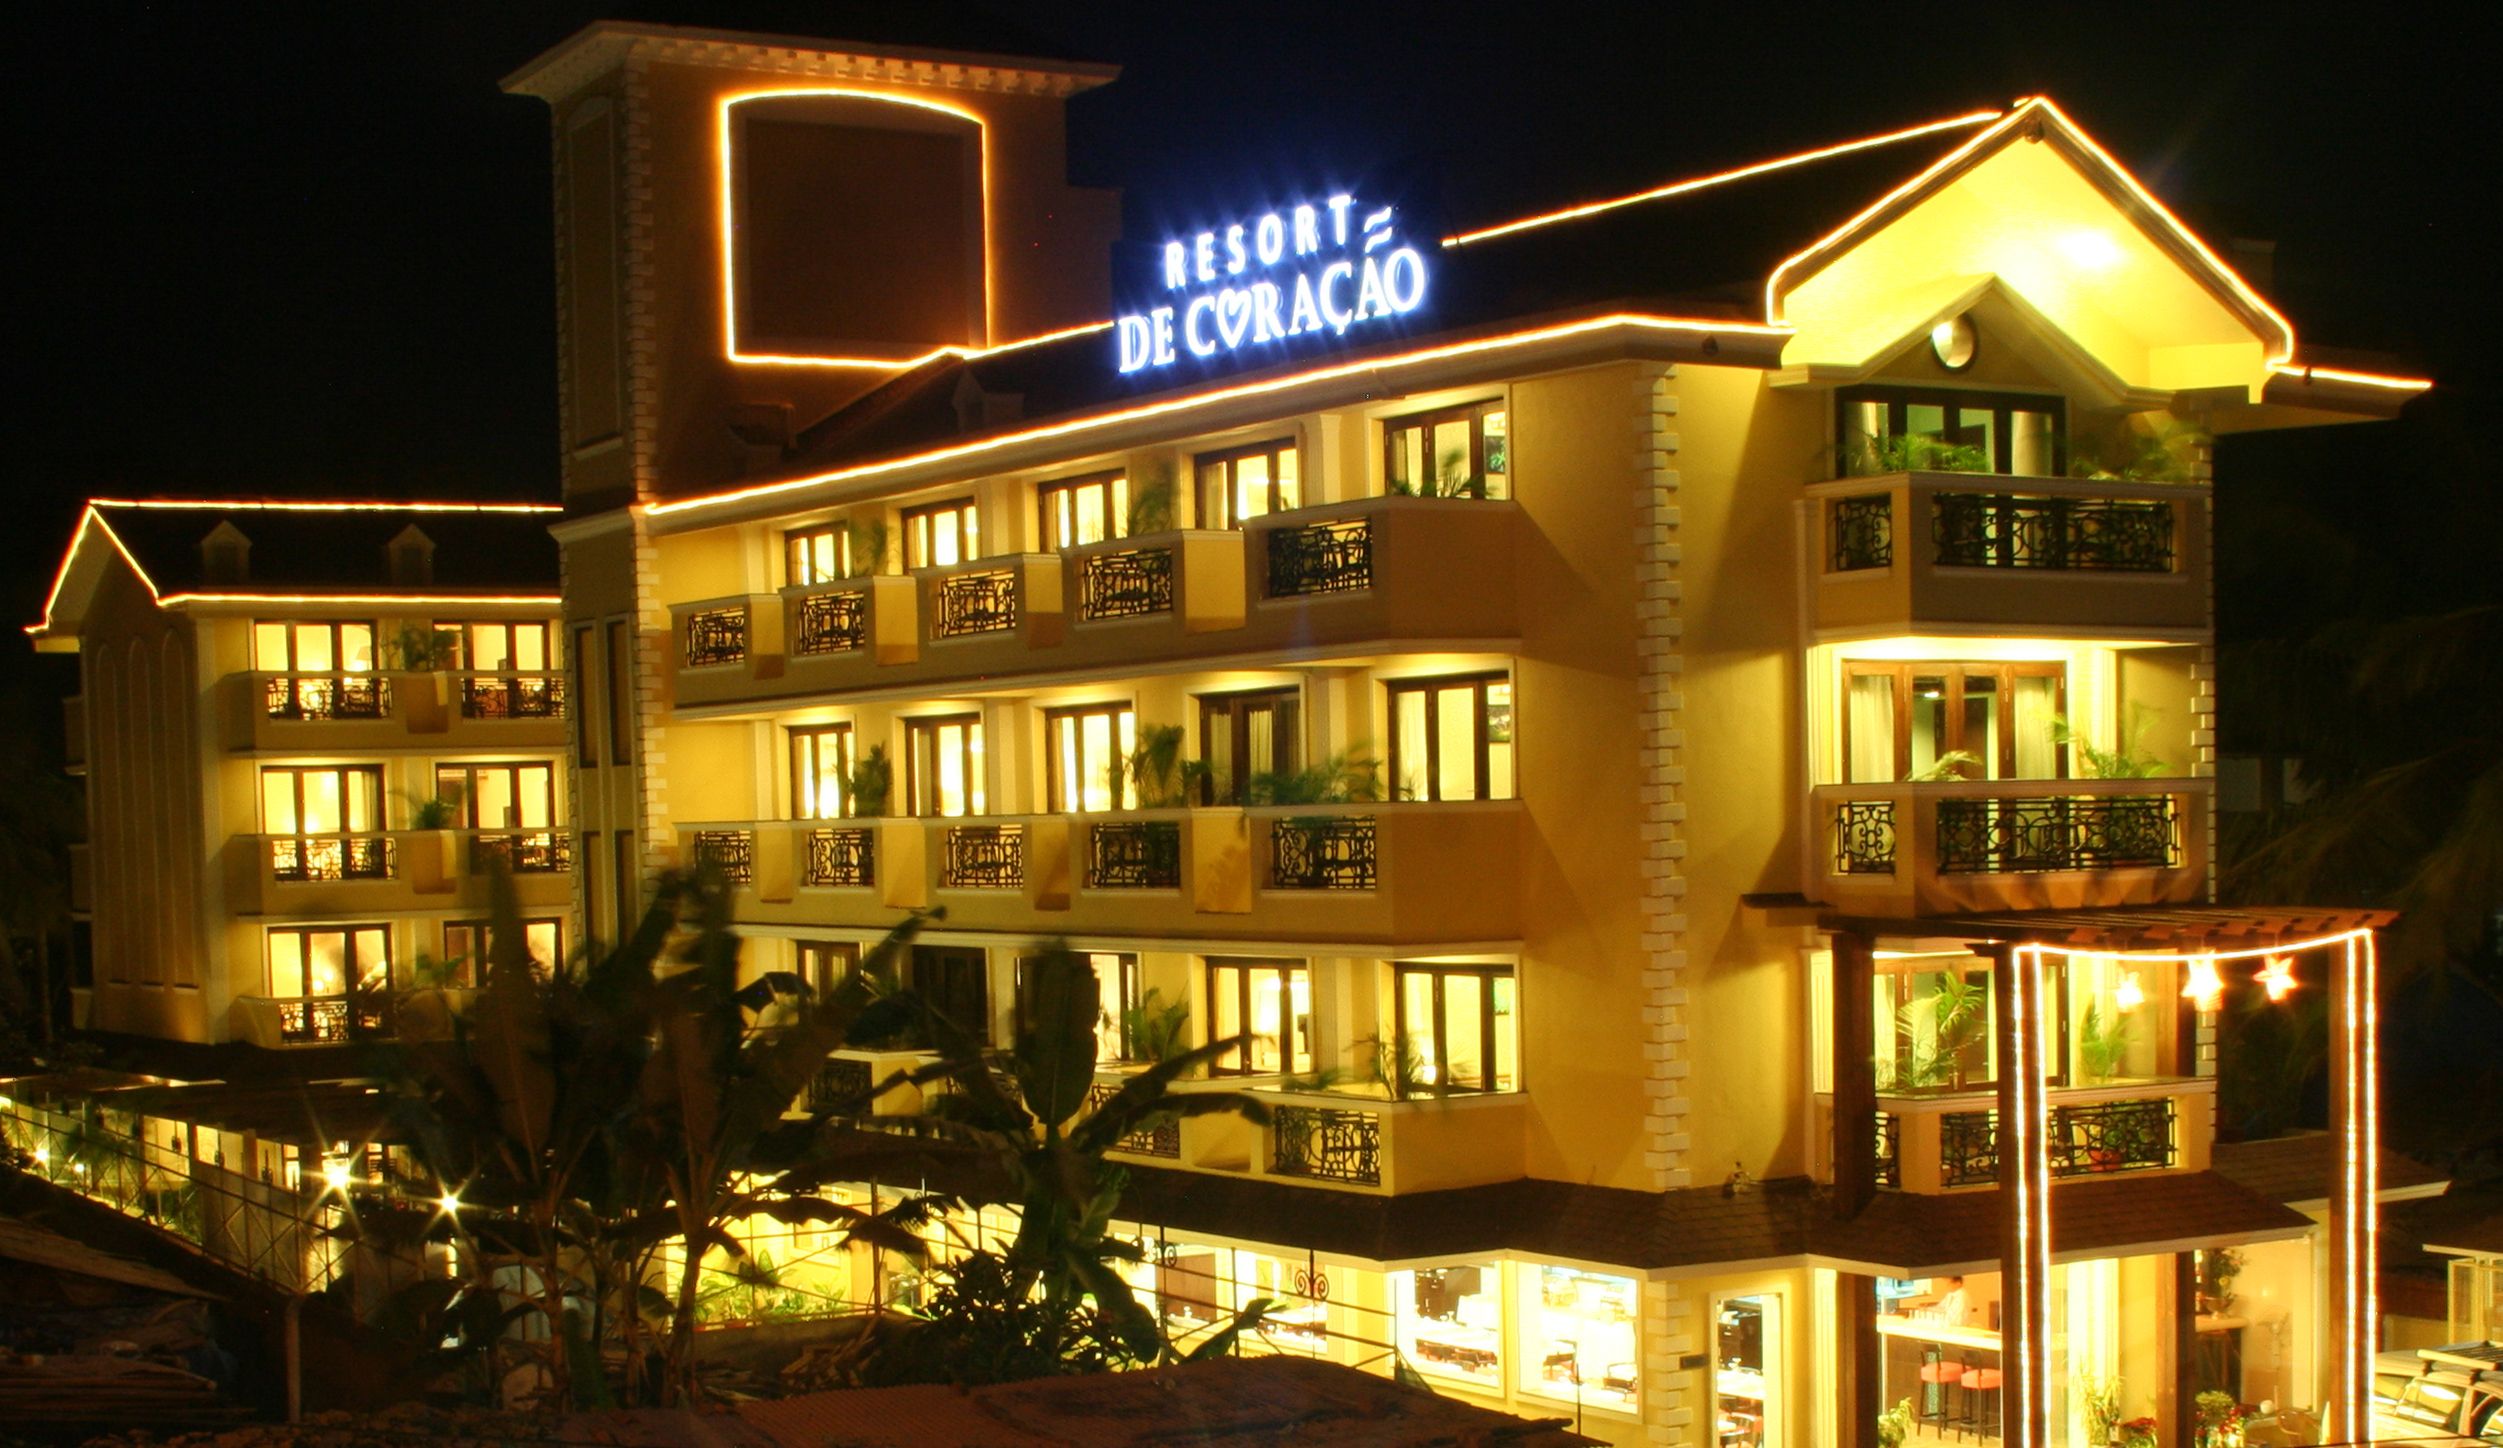 Resort de coracao-calangute reviews, deals & photos 2023 - expedia.co.uk